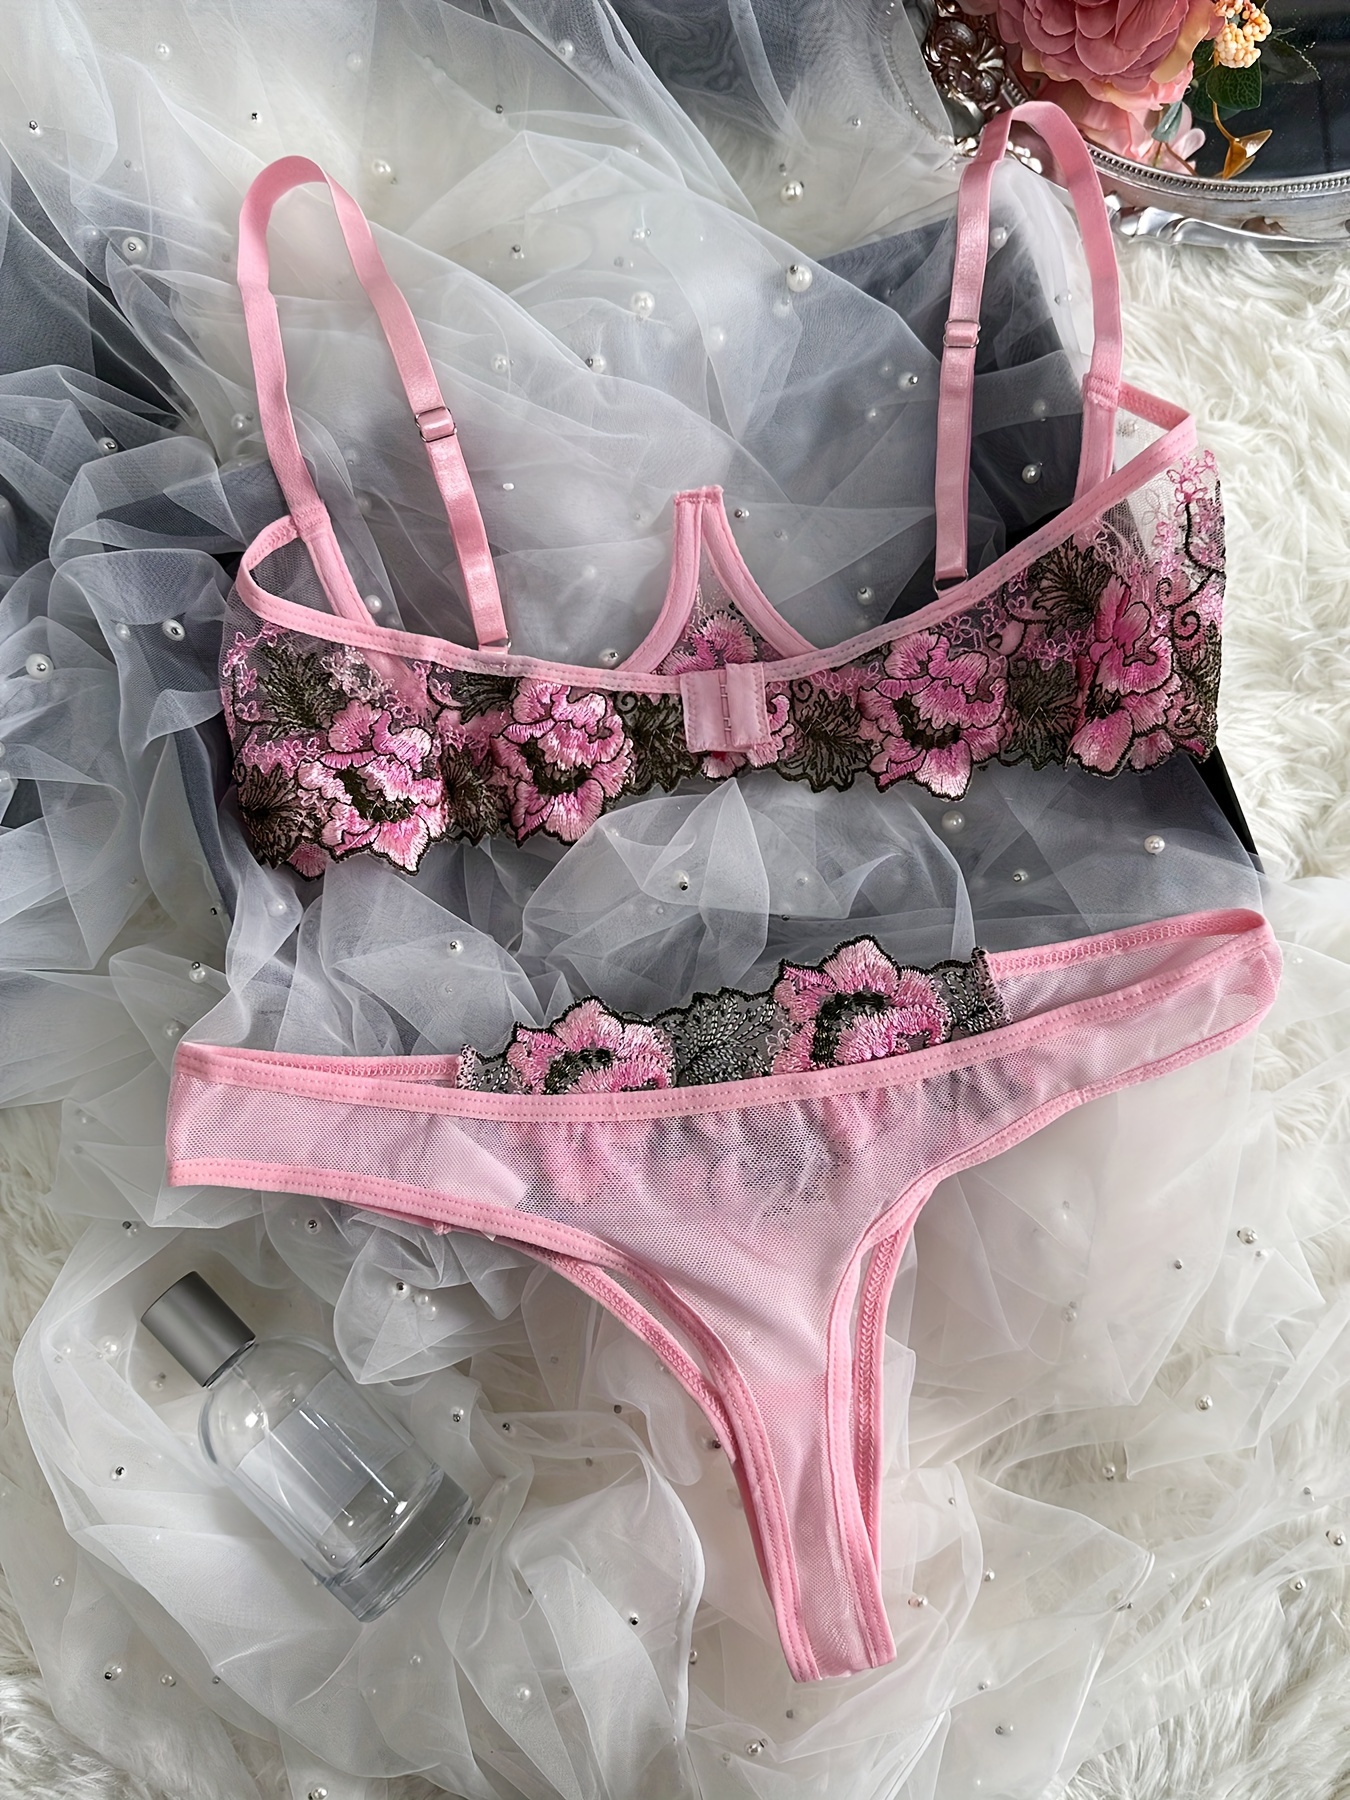 Sexy Women Open Cup Lace Top Bra Thong G-string Underwear Lingerie Set  Nightwear